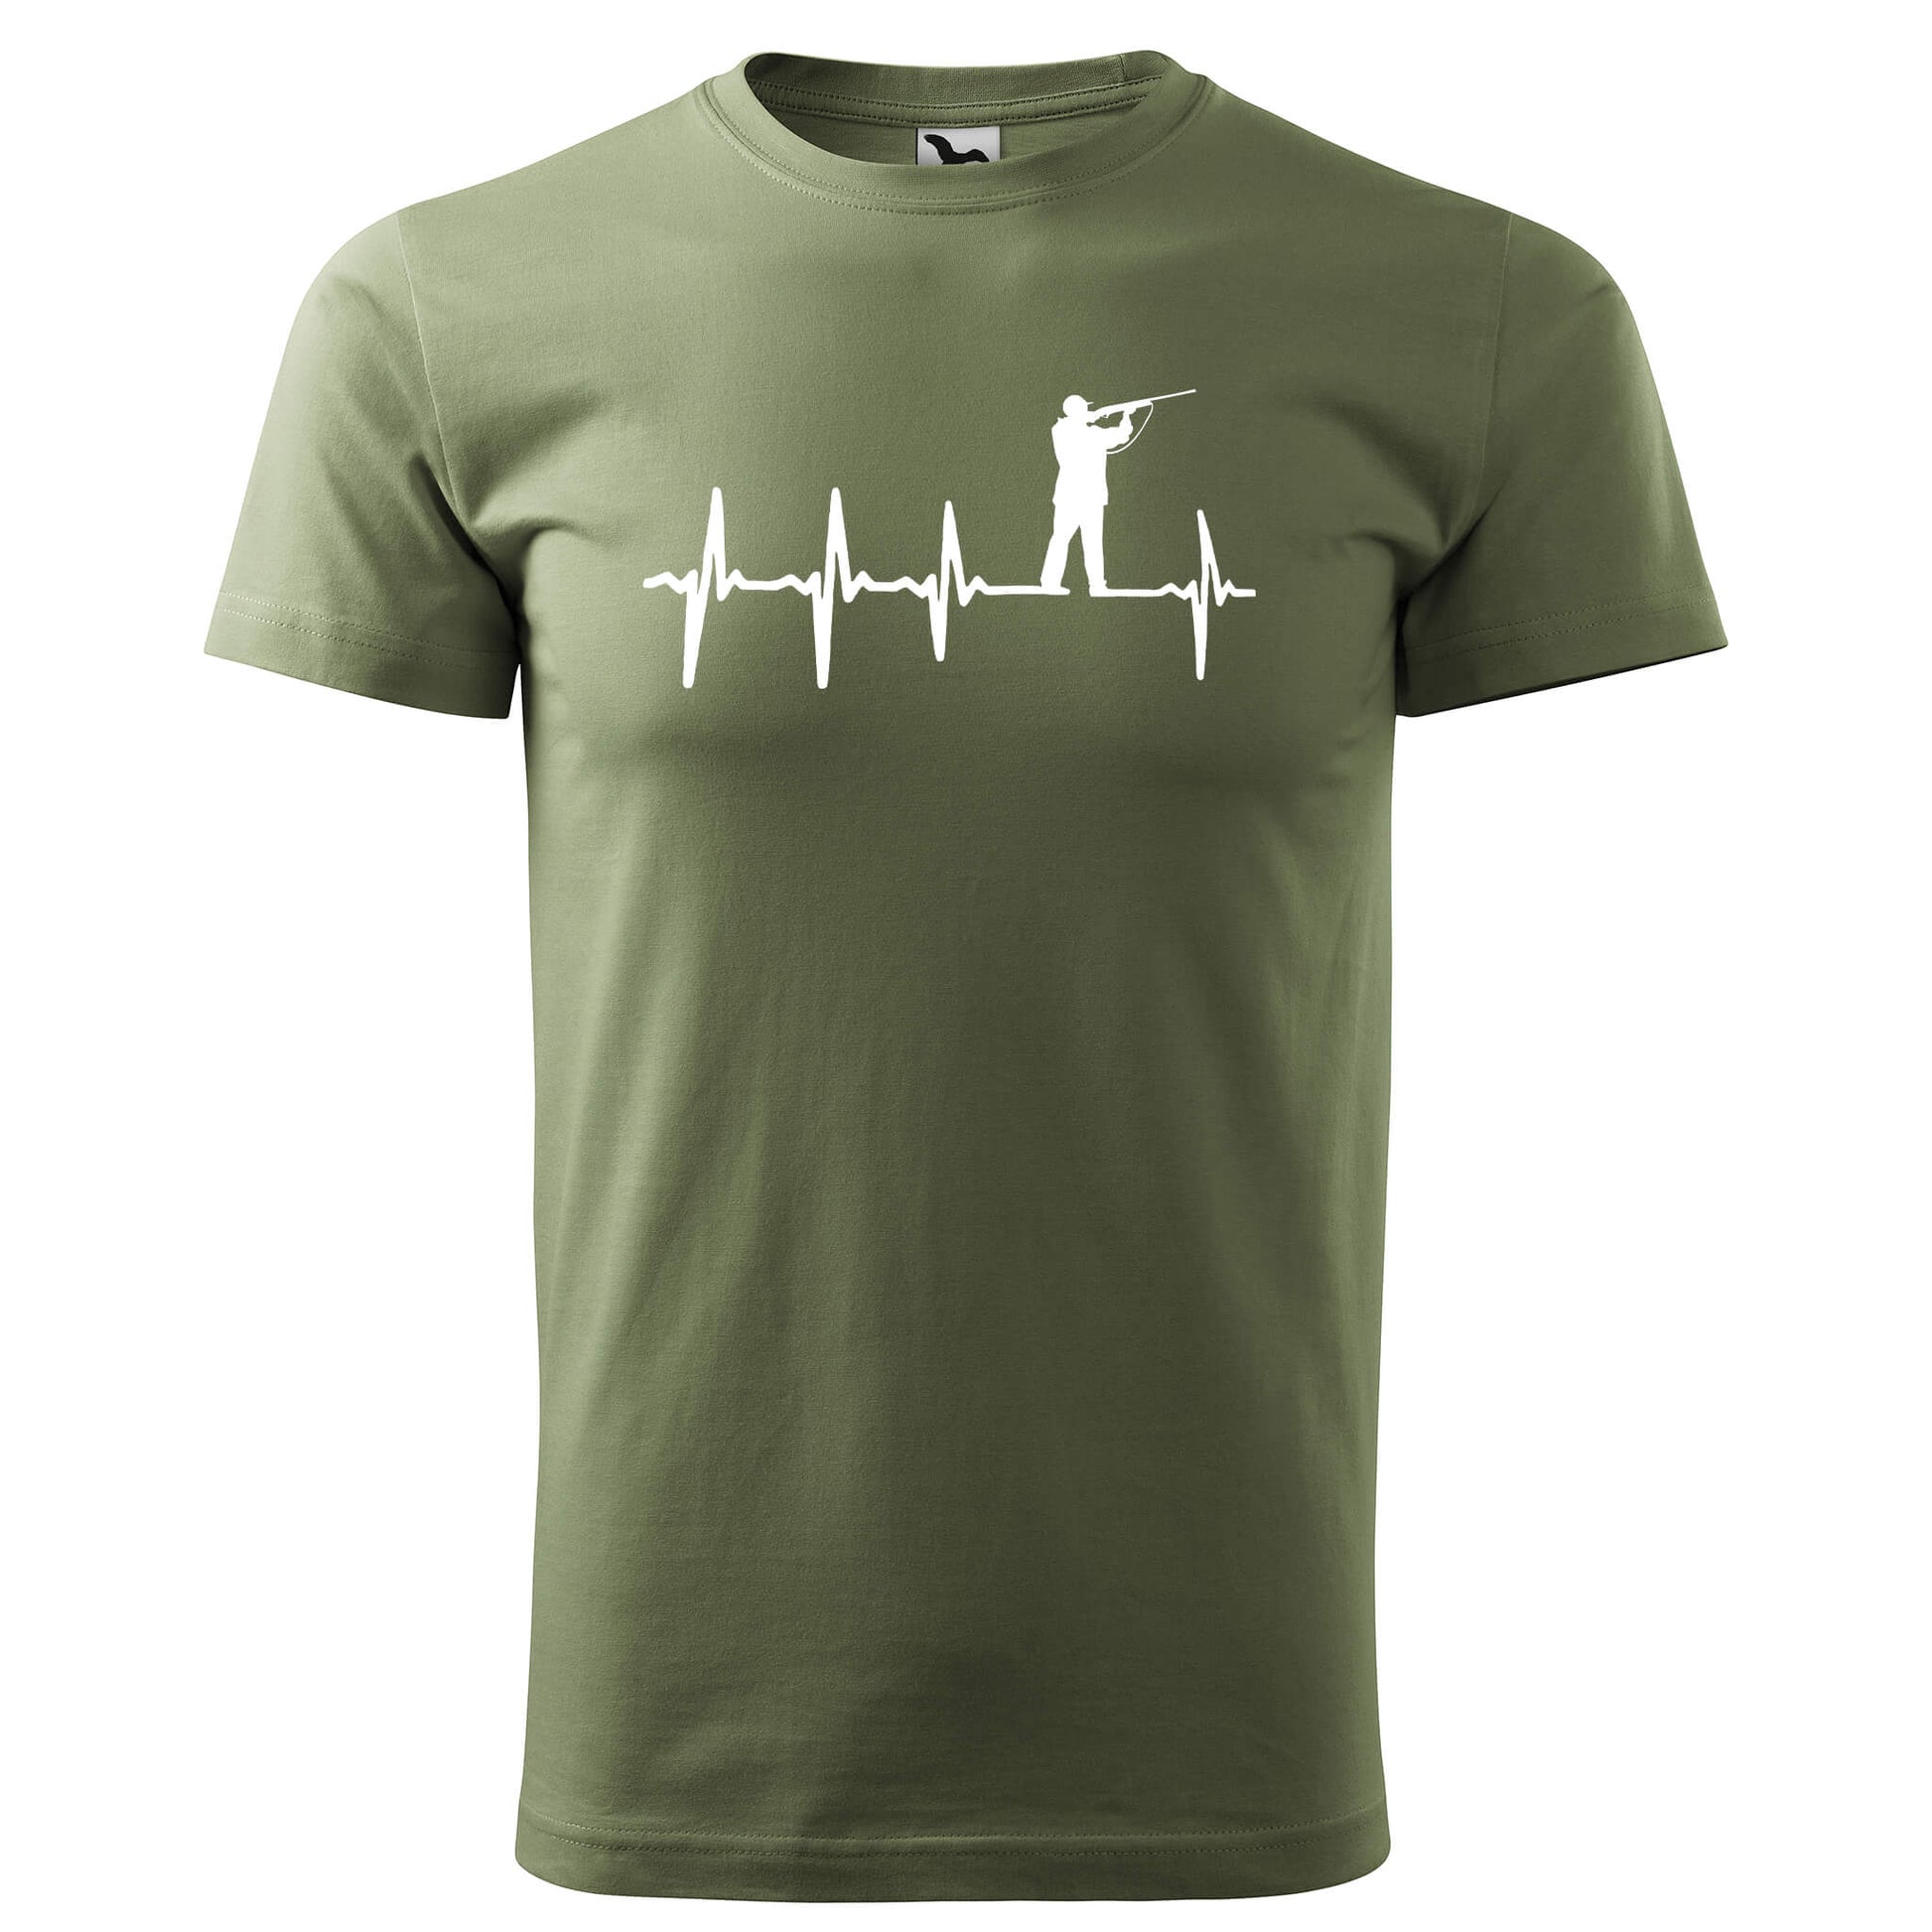 T-shirt - EKG - Hunter - rvdesignprint